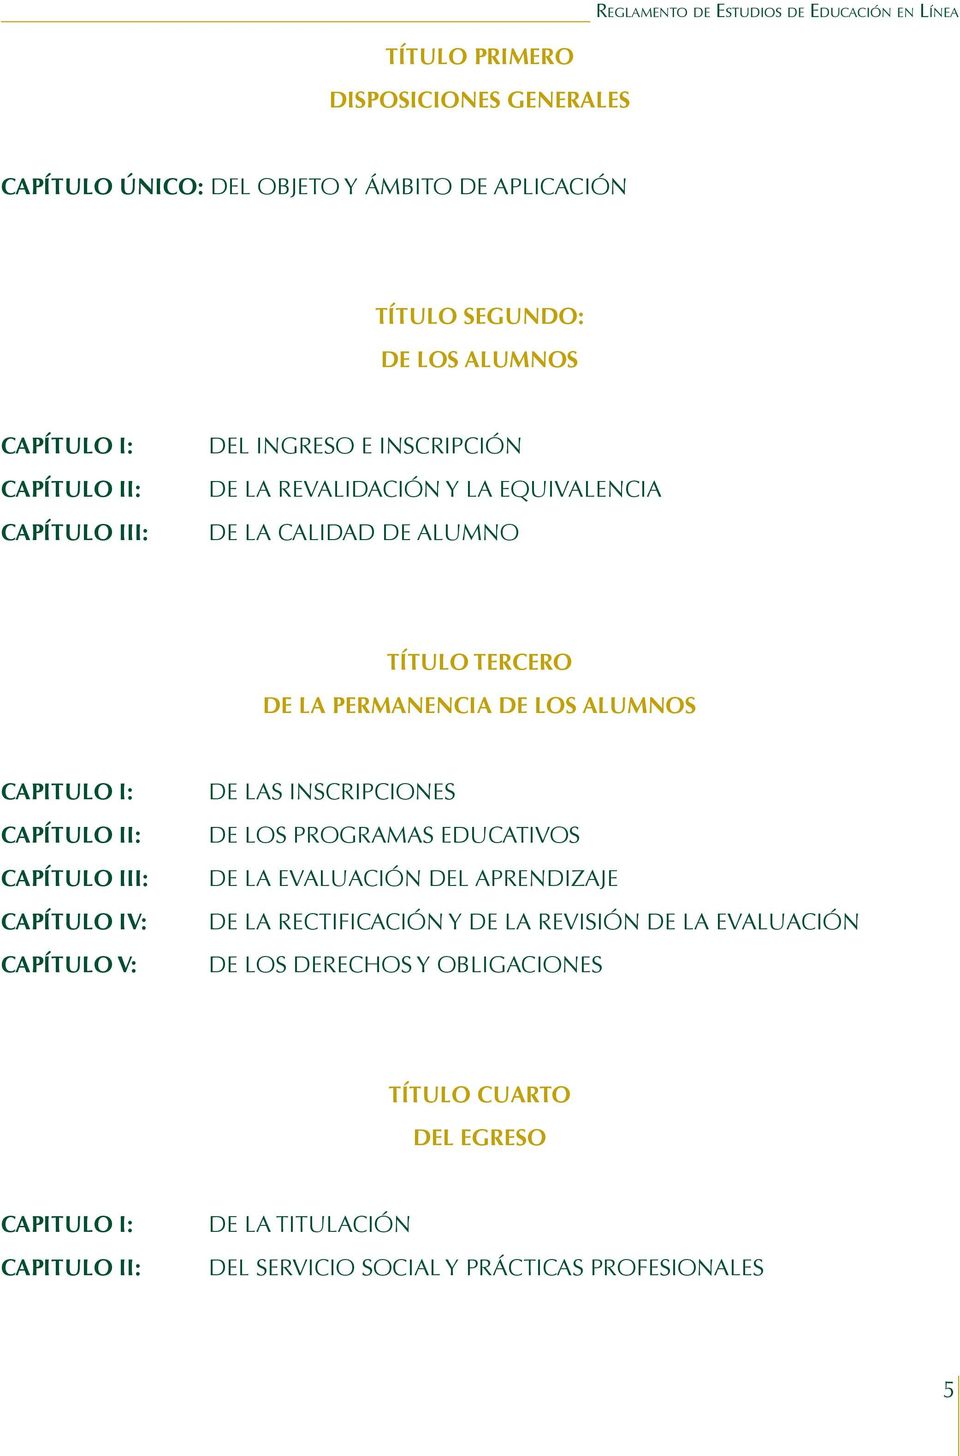 CAPÍTULO III: CAPÍTULO IV: CAPÍTULO V: DE LAS INSCRIPCIONES DE LOS PROGRAMAS EDUCATIVOS DE LA EVALUACIÓN DEL APRENDIZAJE DE LA RECTIFICACIÓN Y DE LA REVISIÓN